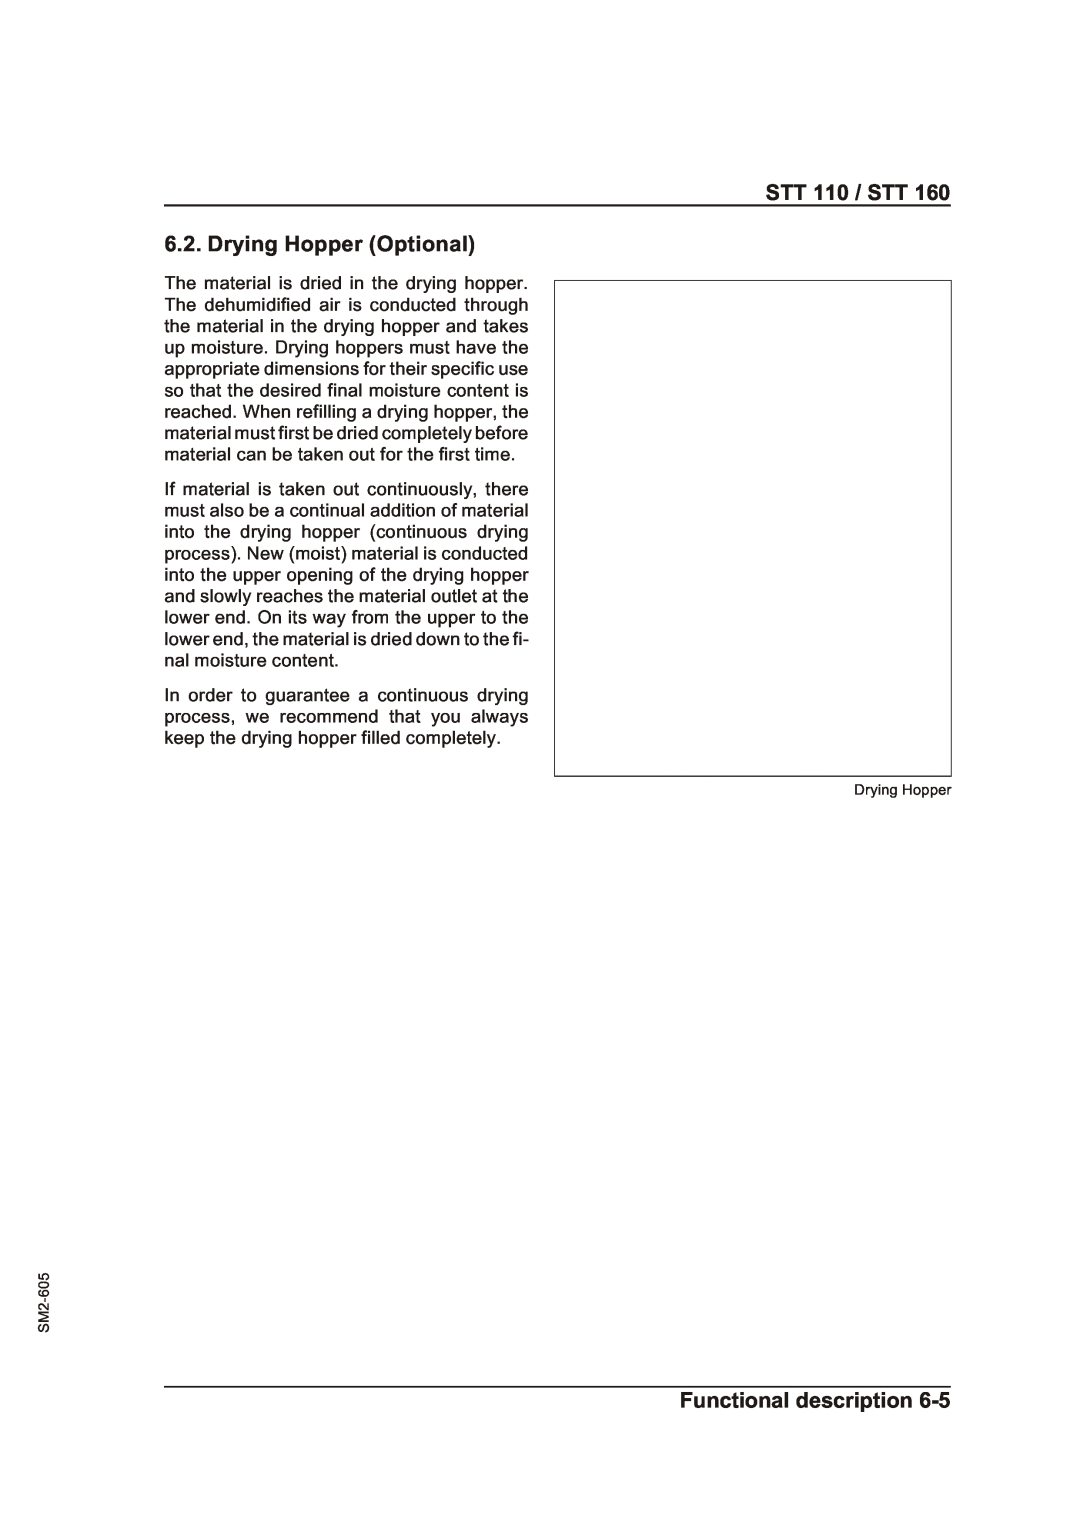 Sterling STT 160 manual STT 110 / STT 6.2. Drying Hopper Optional, Functional description, Drying Hopper SM2-605 